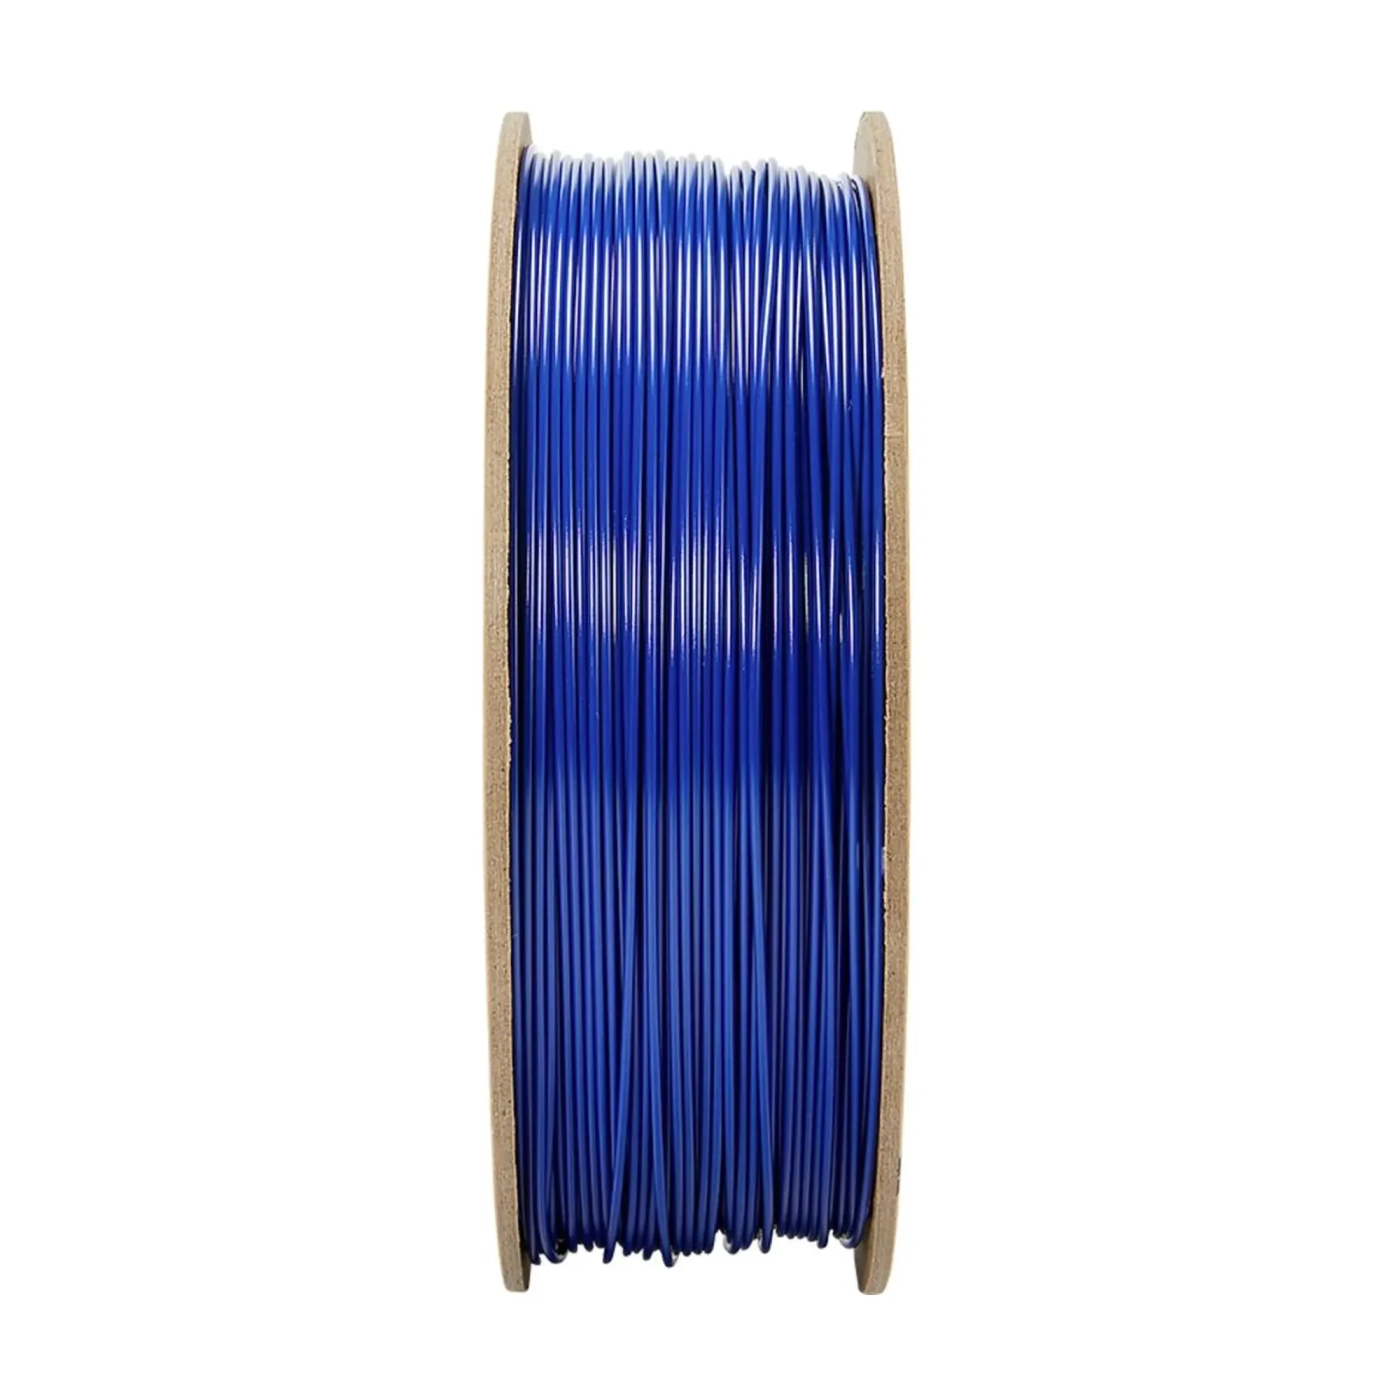 Купить PolyLite PETG Filament (пластик) для 3D принтера Polymaker 1кг, 1.75мм, синий - фото 2